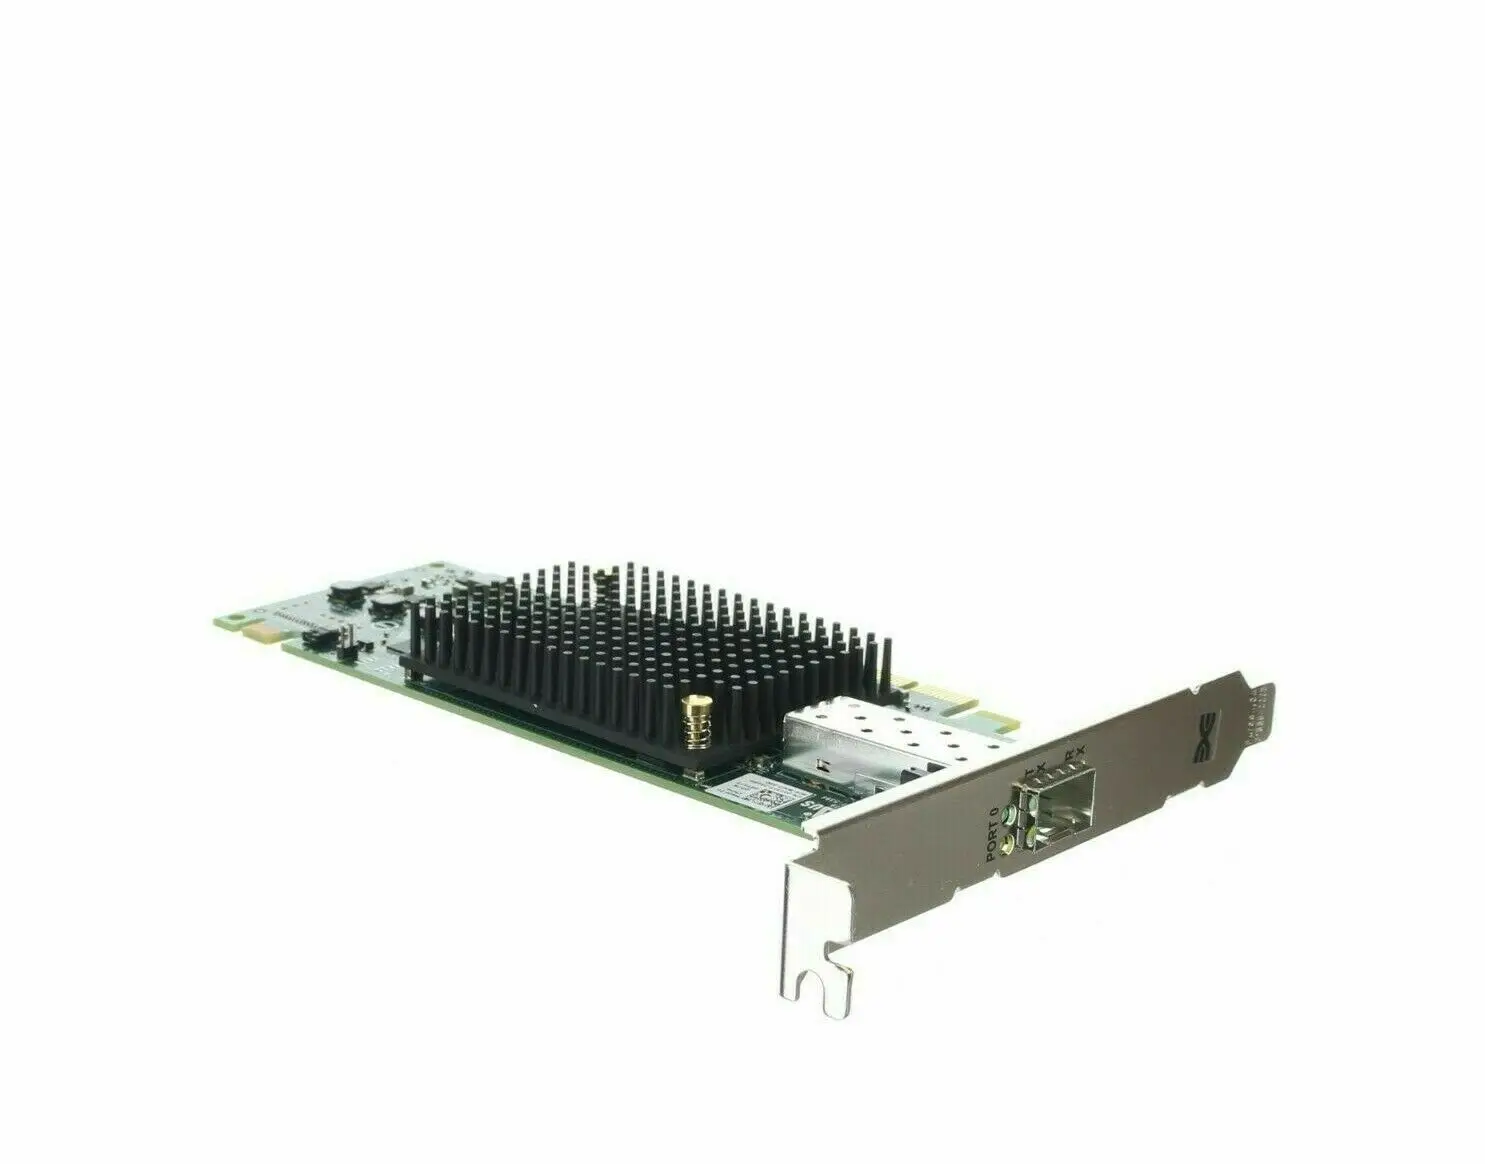 New Emulex LPe16000 16Gb/s FC Single Port HBA PCIe LP S26361-F4994-E1LPe16000 - Emulex LPe16000-M6